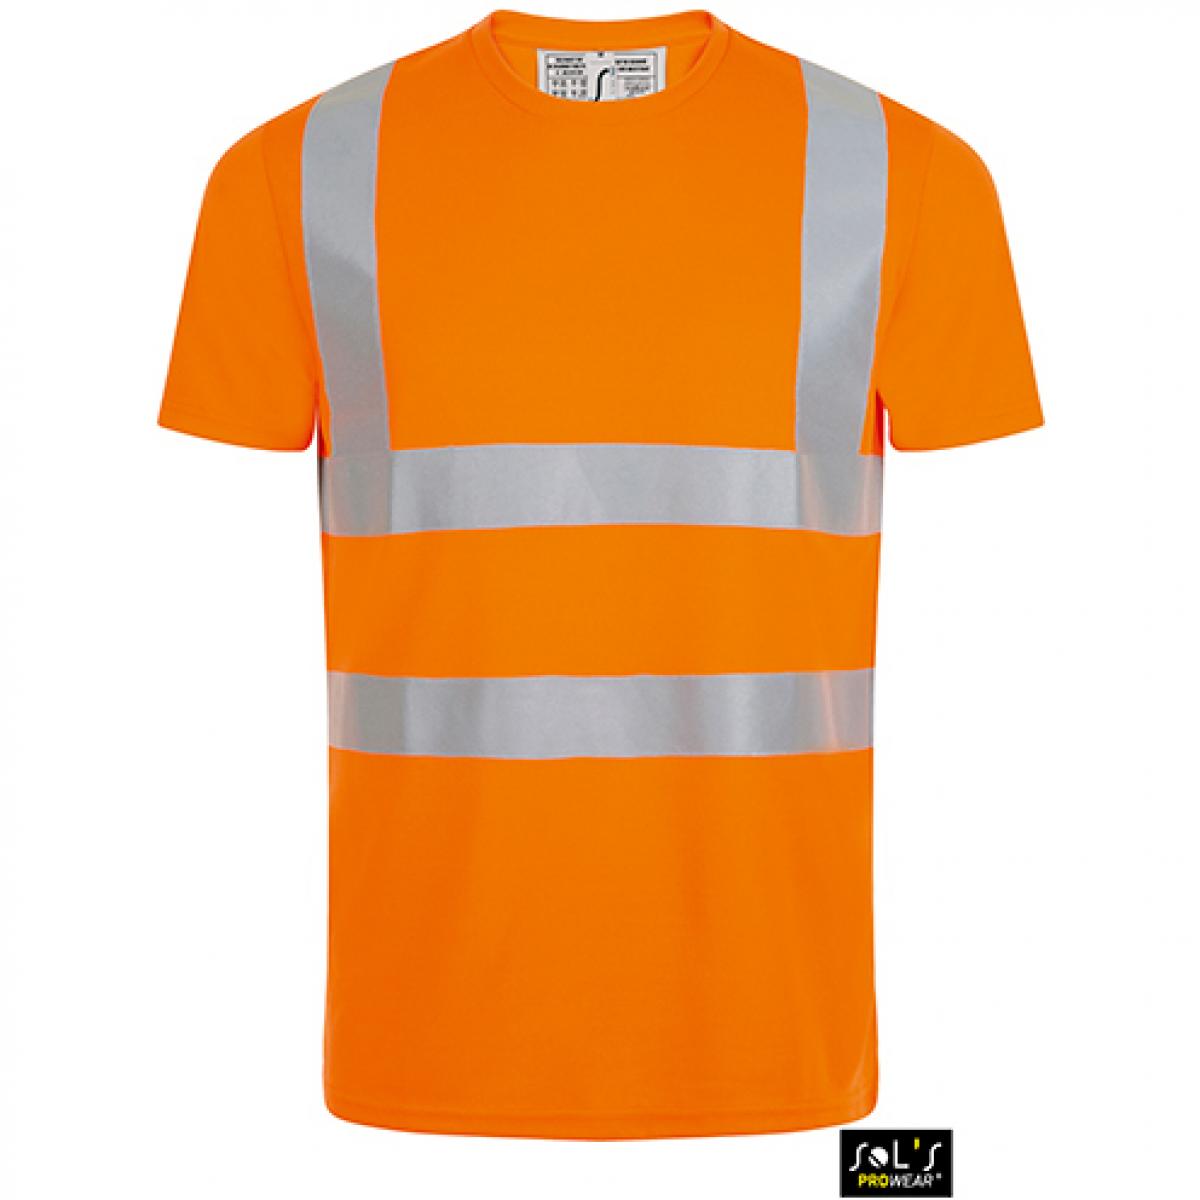 Hersteller: SOLs ProWear Herstellernummer: 01721 Artikelbezeichnung: Herren Mercure Pro Arbeits-/Sicherheits T-Shirt Farbe: Neon Orange